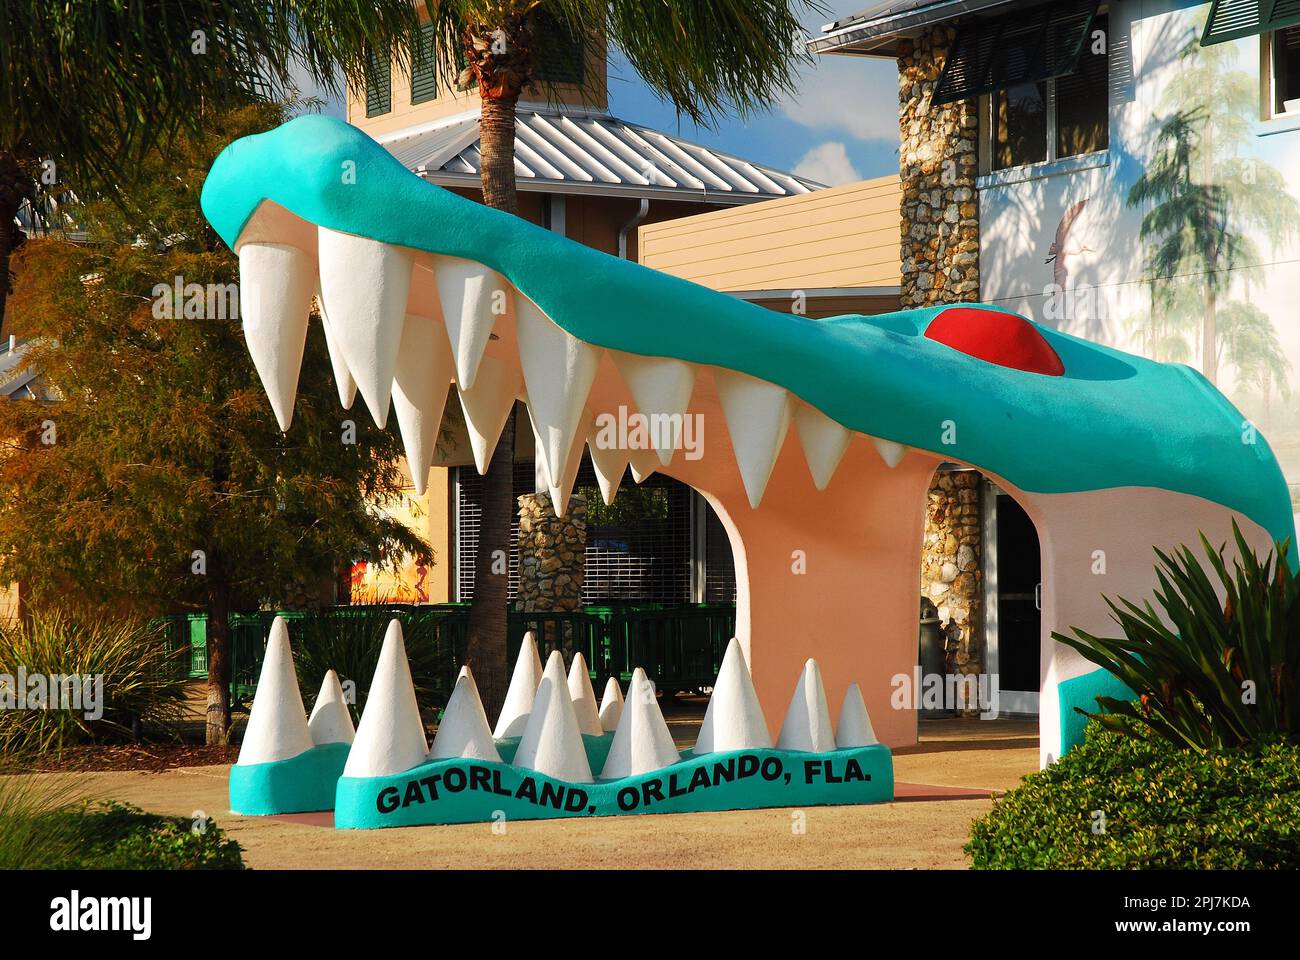 Ein großer Krokodilkopf mit offenem Mund und offenen Zähnen markiert den Eingang zum Gatorland, einer Touristenattraktion in Orlando, Florida Stockfoto